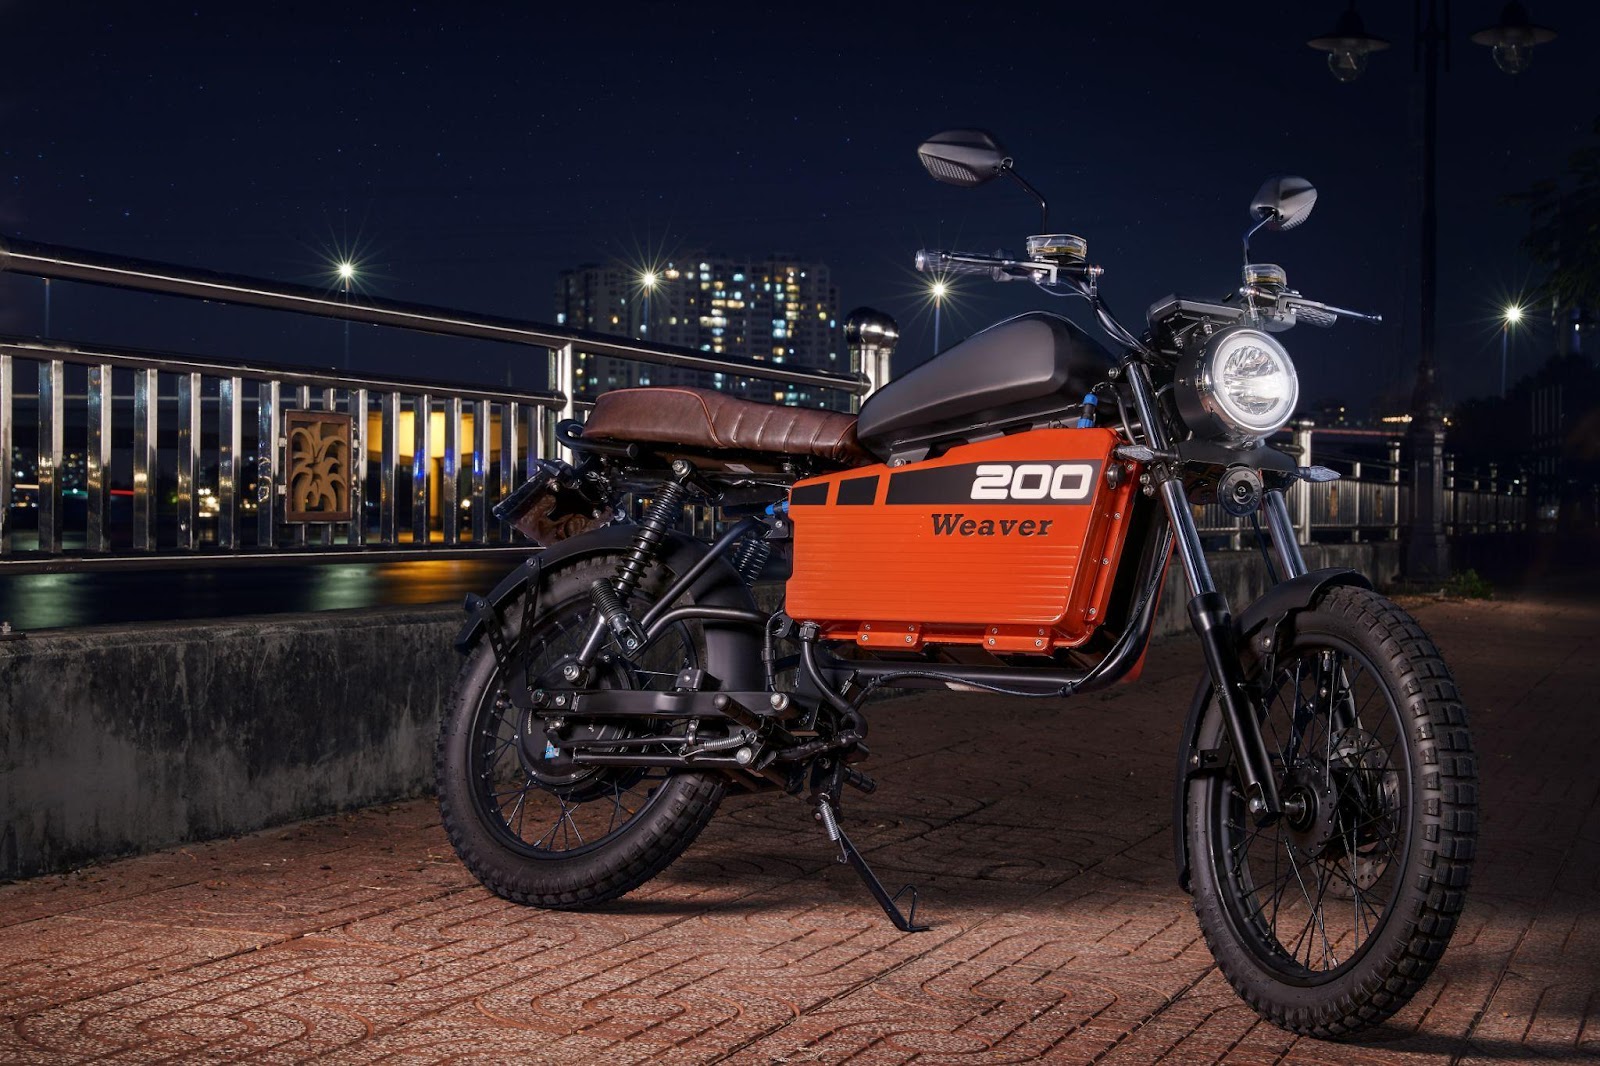 Thắng lớn với 2 mẫu xe máy điện, Dat Bike mở rộng tầm ảnh hưởng tại Đà Nẵng - Ảnh 2.